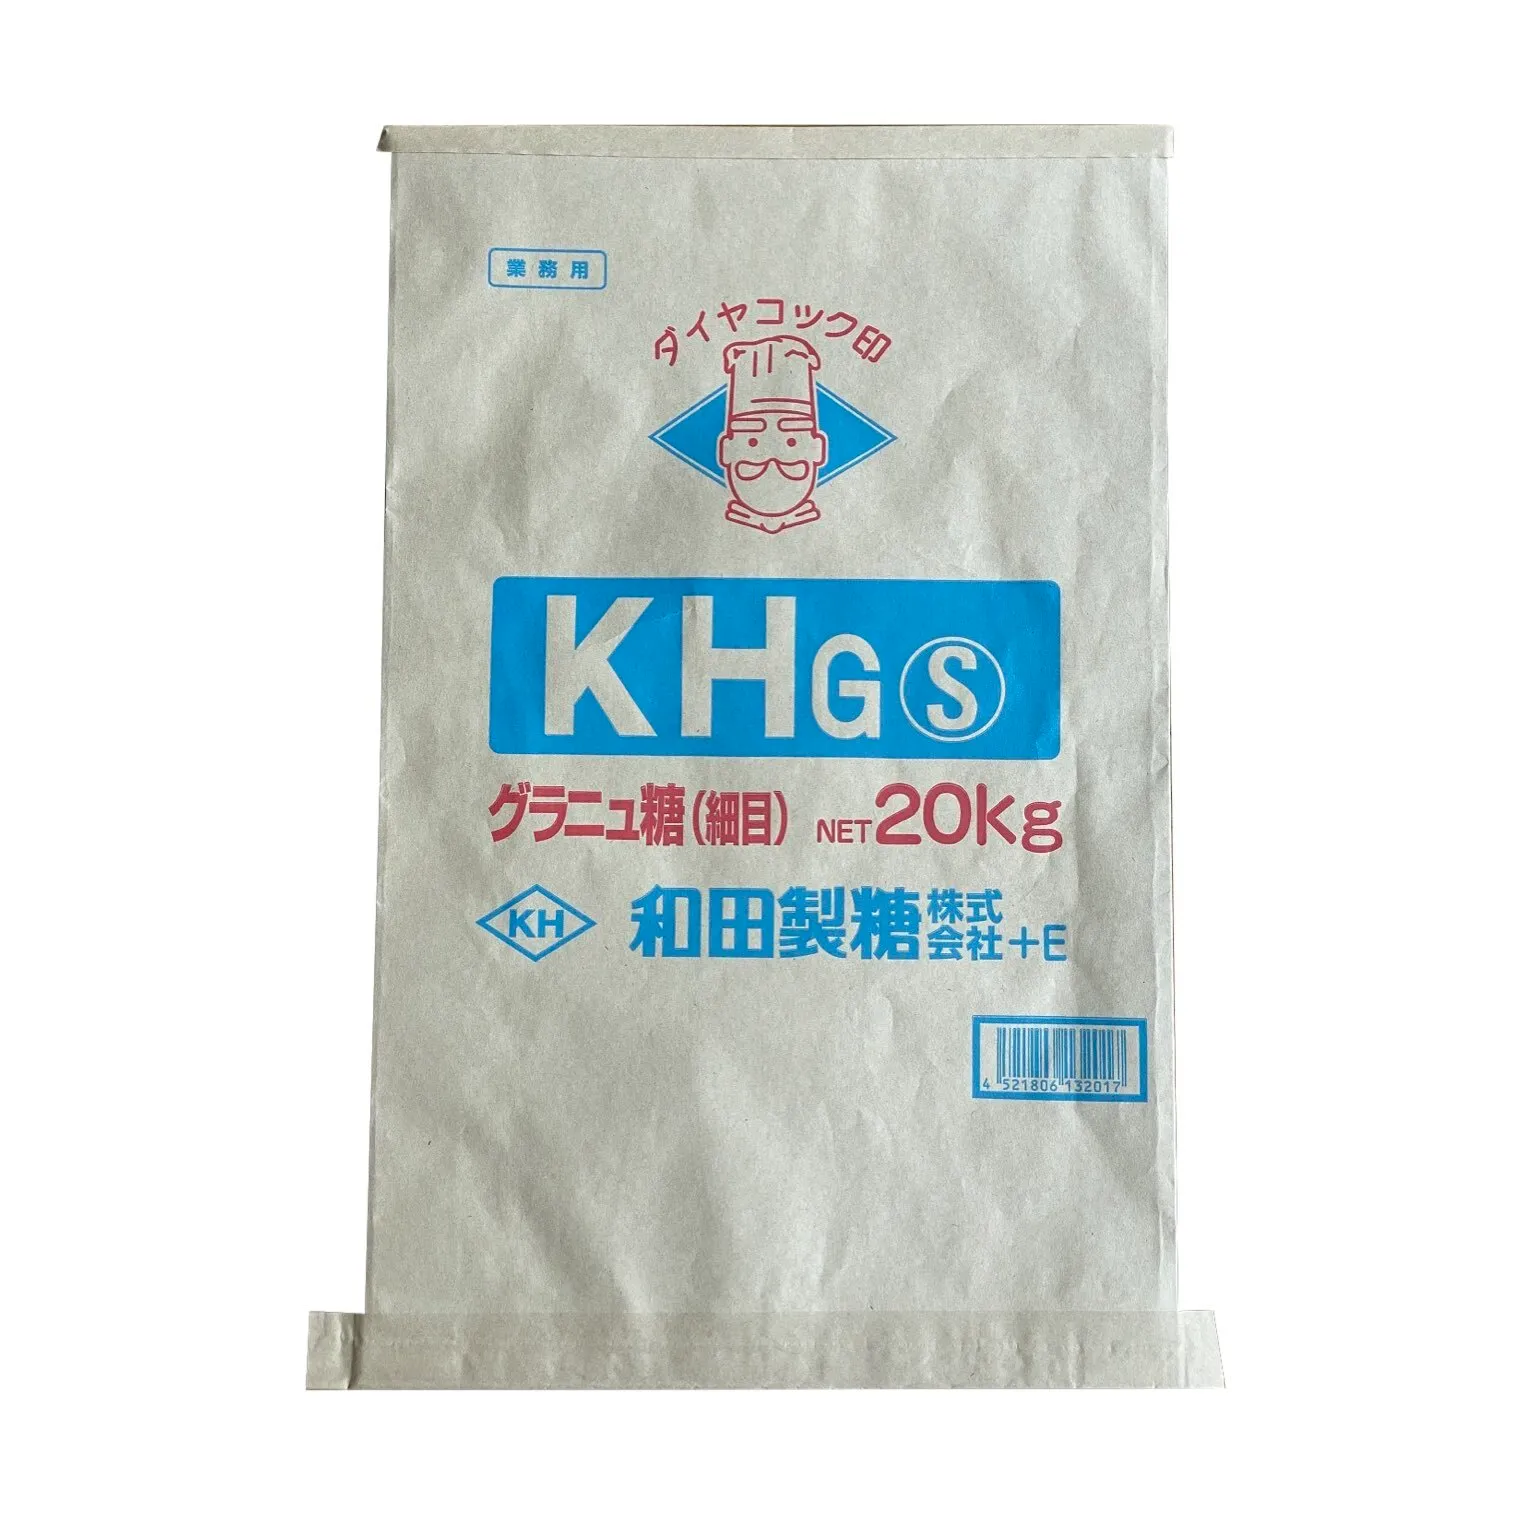 KHG-Sグラニュー糖(細目)